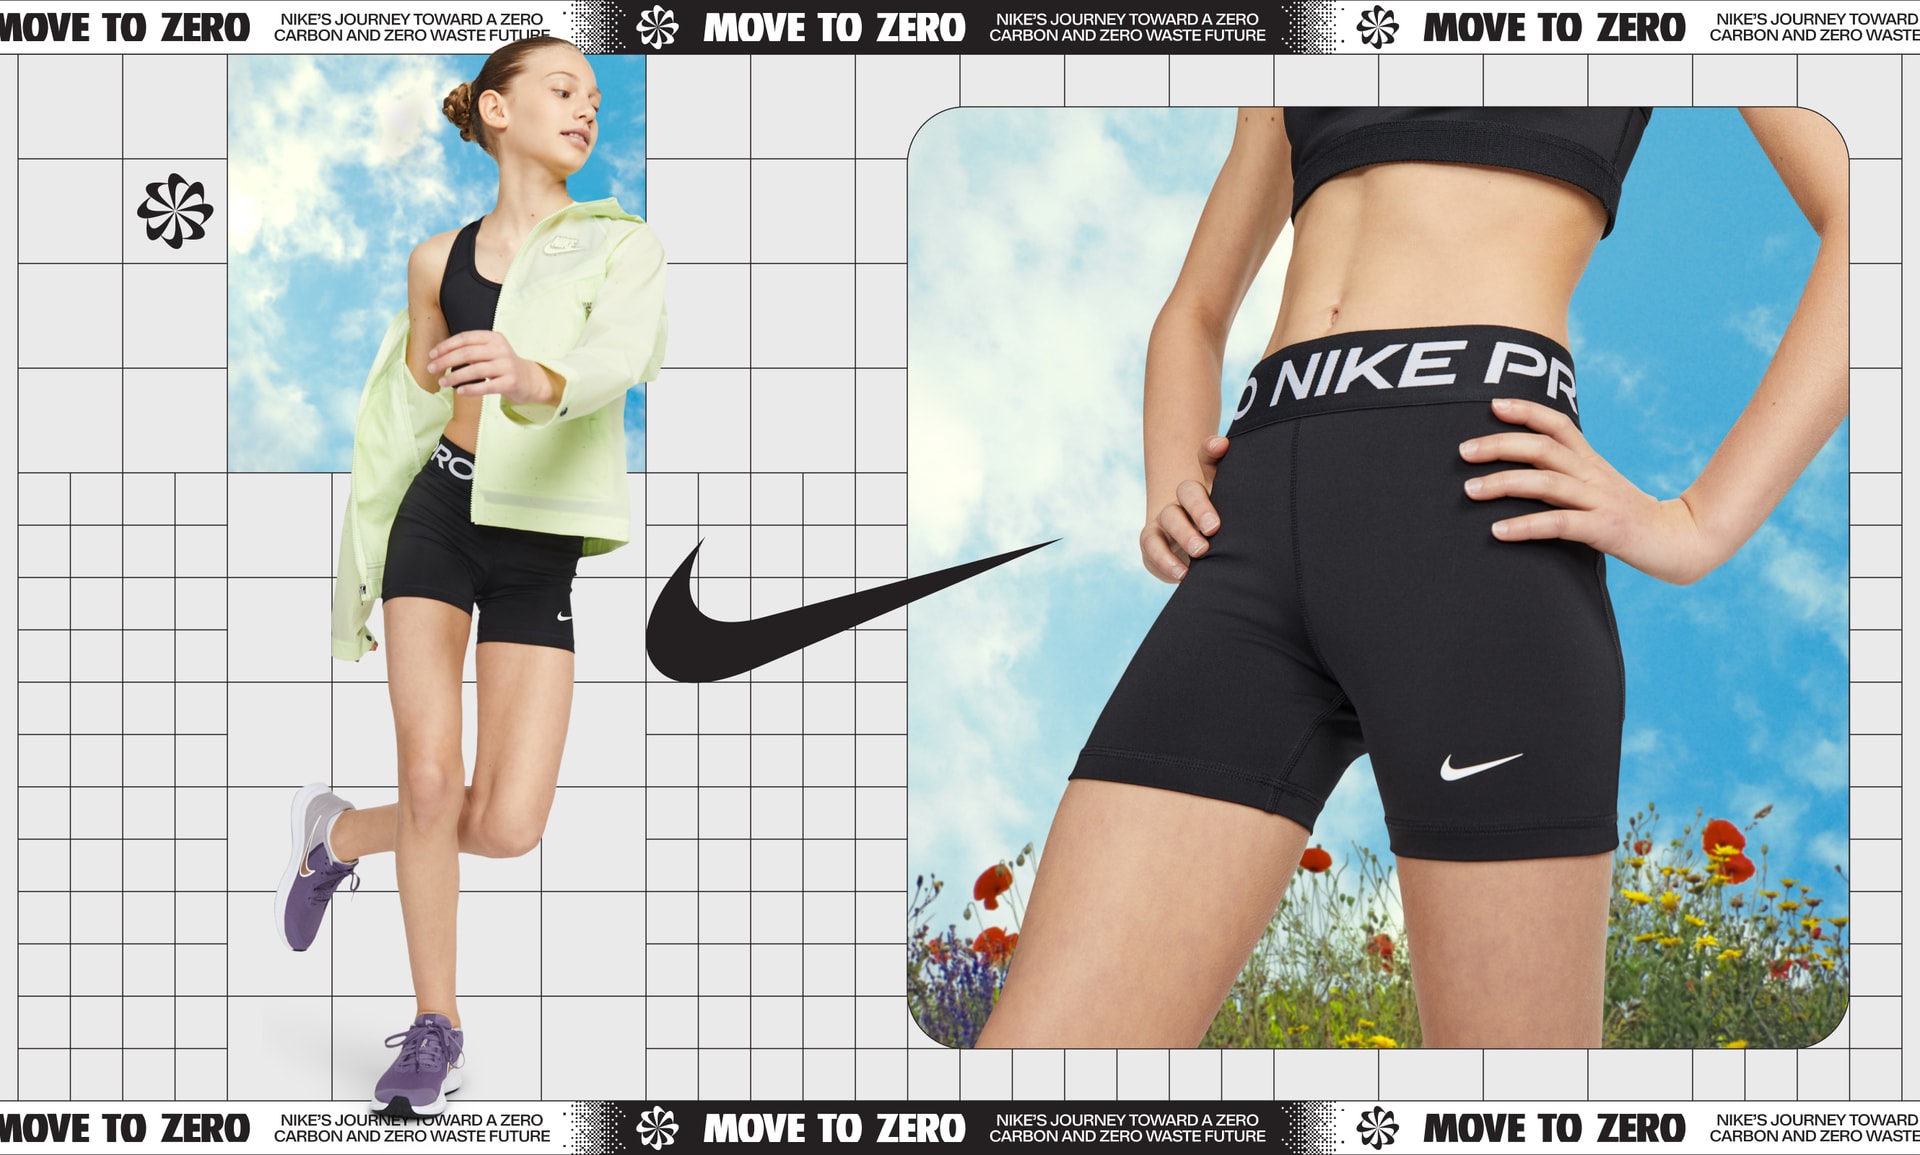 Nike Pro Big Kids' (Girls') Tie-Dye 3 Shorts Girls DA1338-394